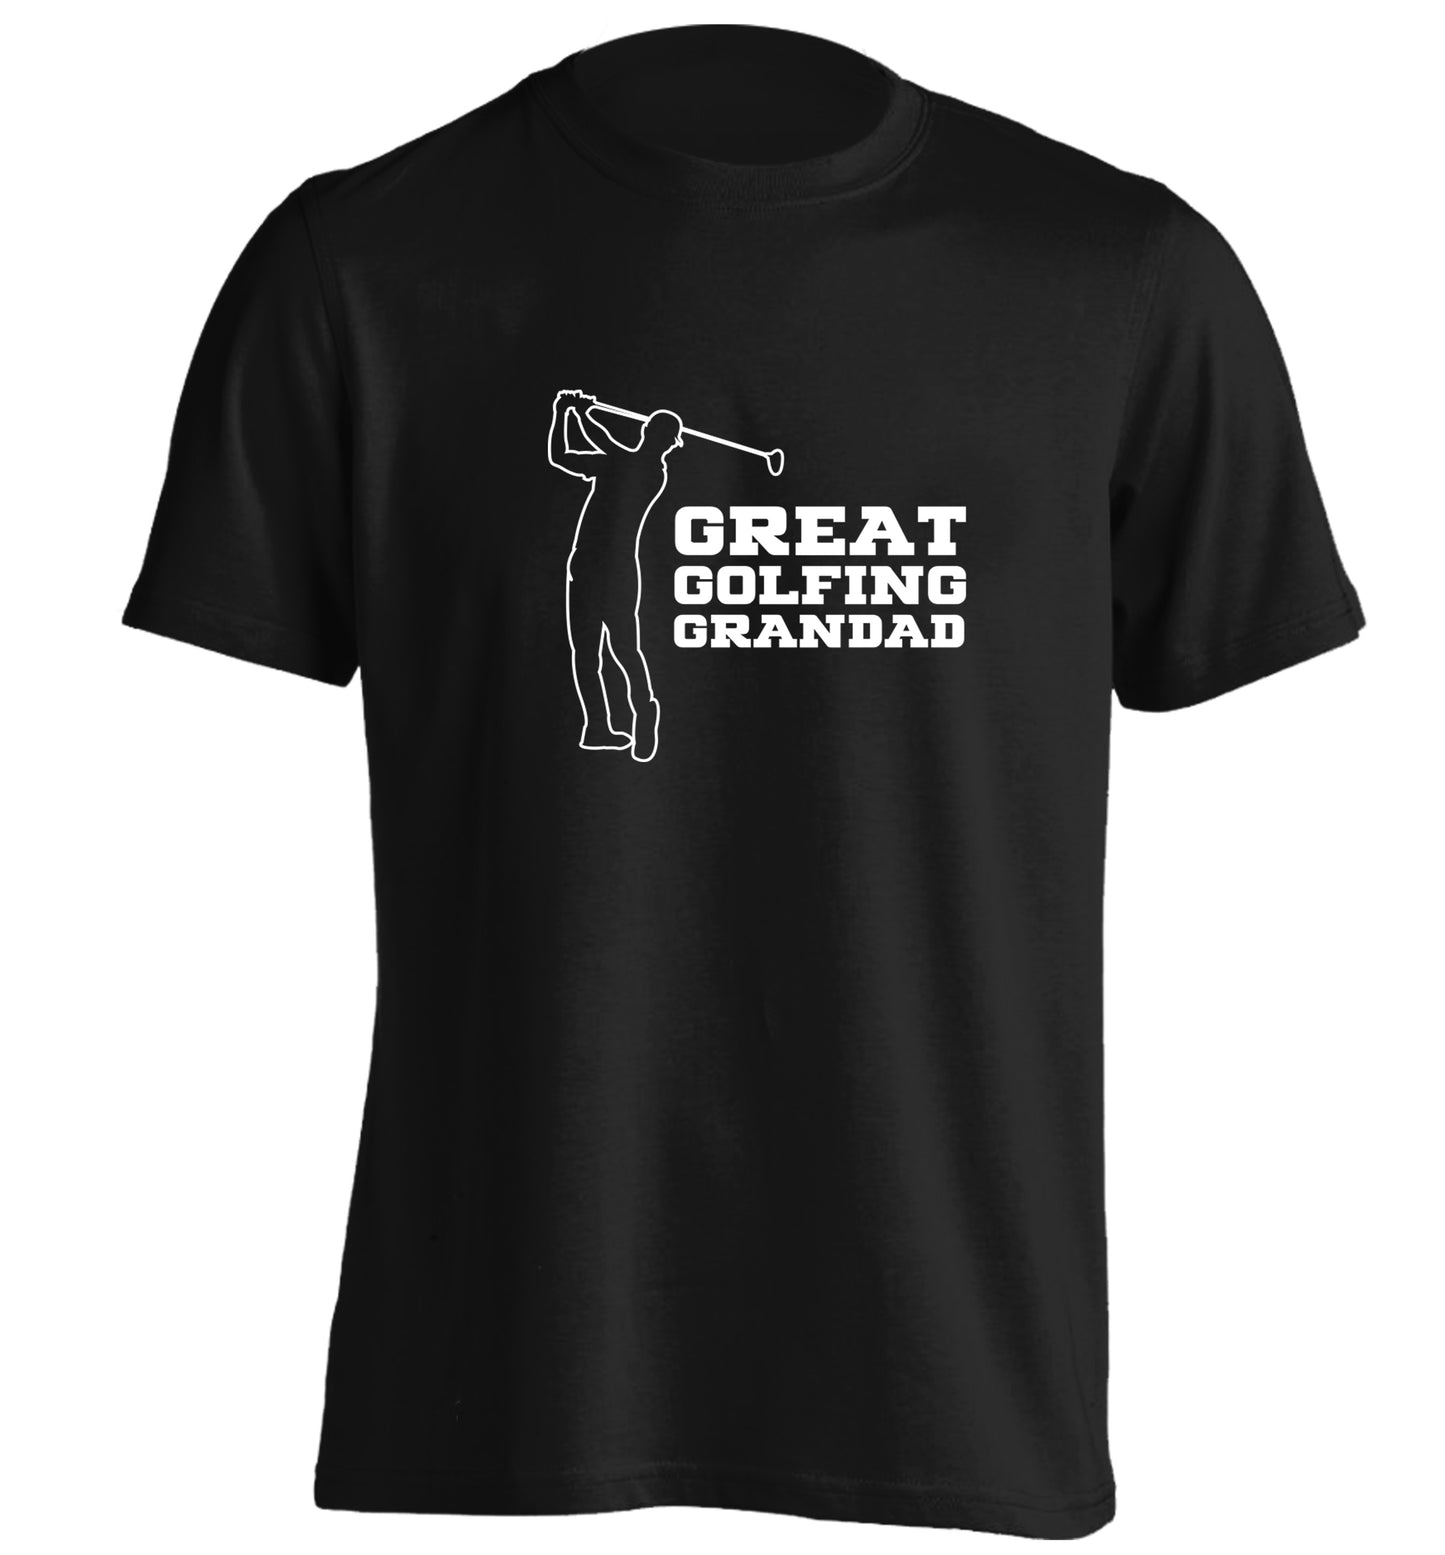 Great Golfing Grandad adults unisex black Tshirt 2XL